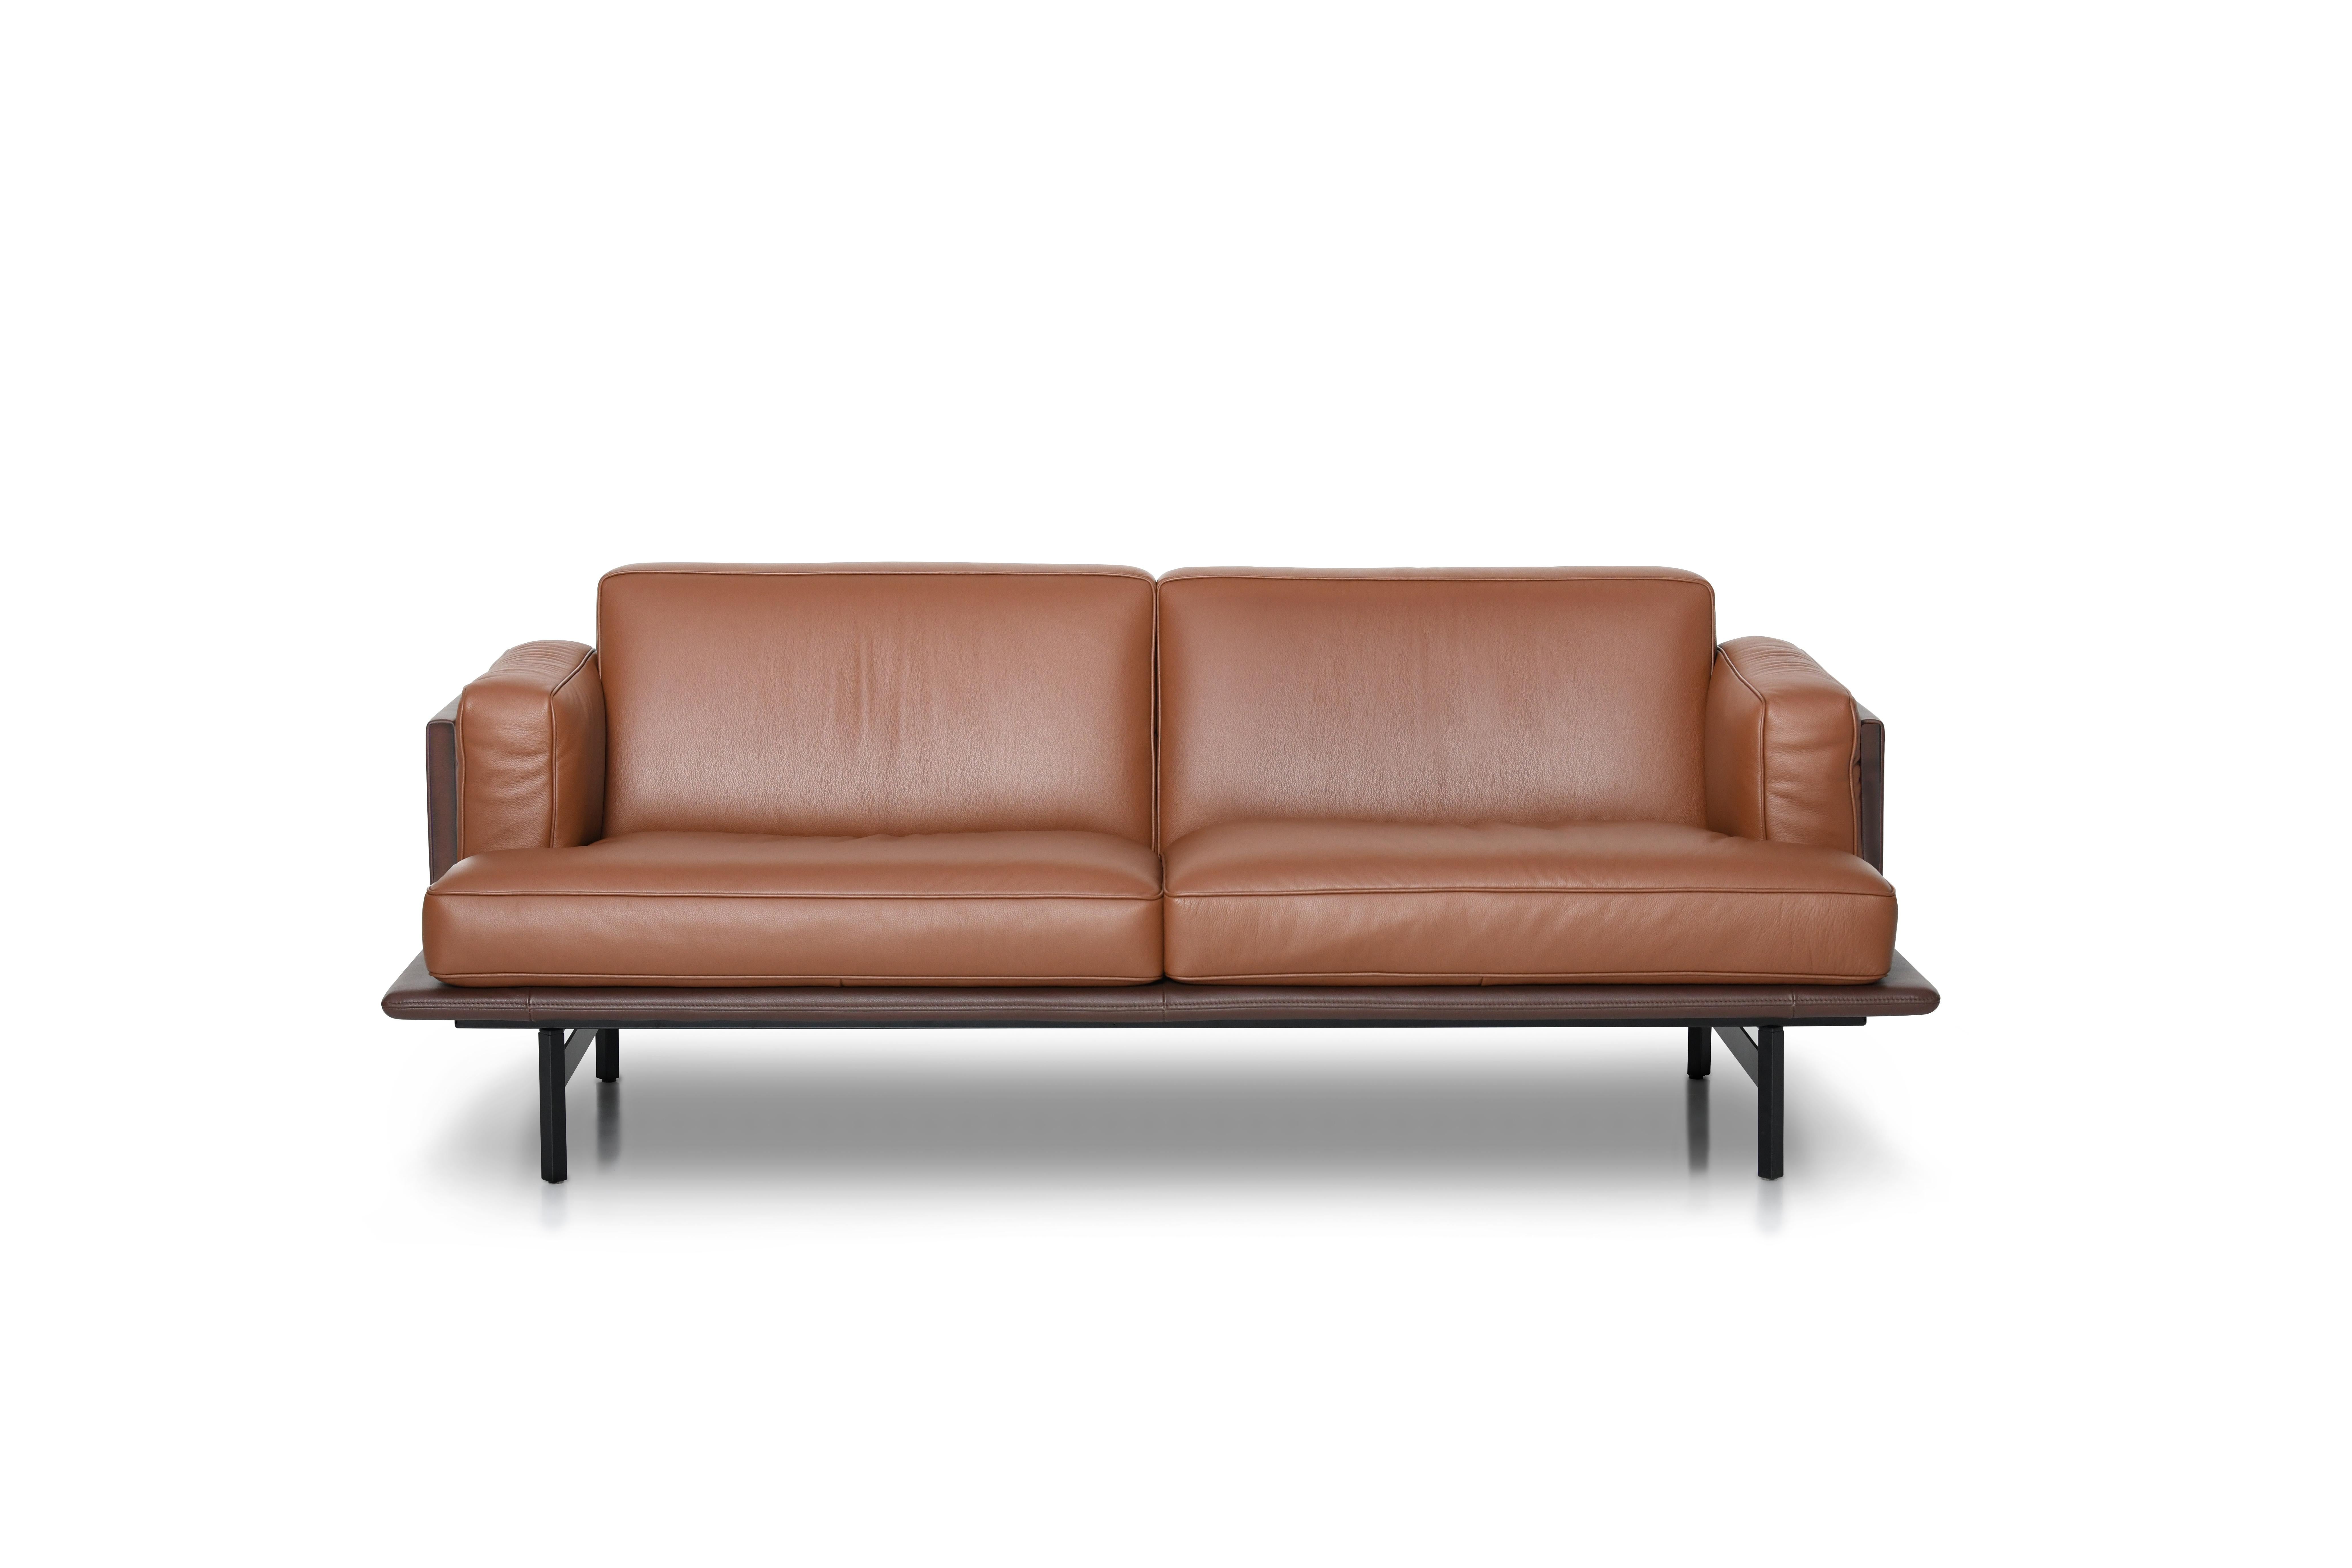 Sofa DS-175 von De Sede
Designer: Patrick Norguet
Abmessungen: T 56 x B 180 x H 74
MATERIAL: Stahl mit matter Beschichtung (Leder, Stoff).
Die Preise können sich je nach den gewählten Materialien und der Größe ändern. 

Belle Époque trifft auf